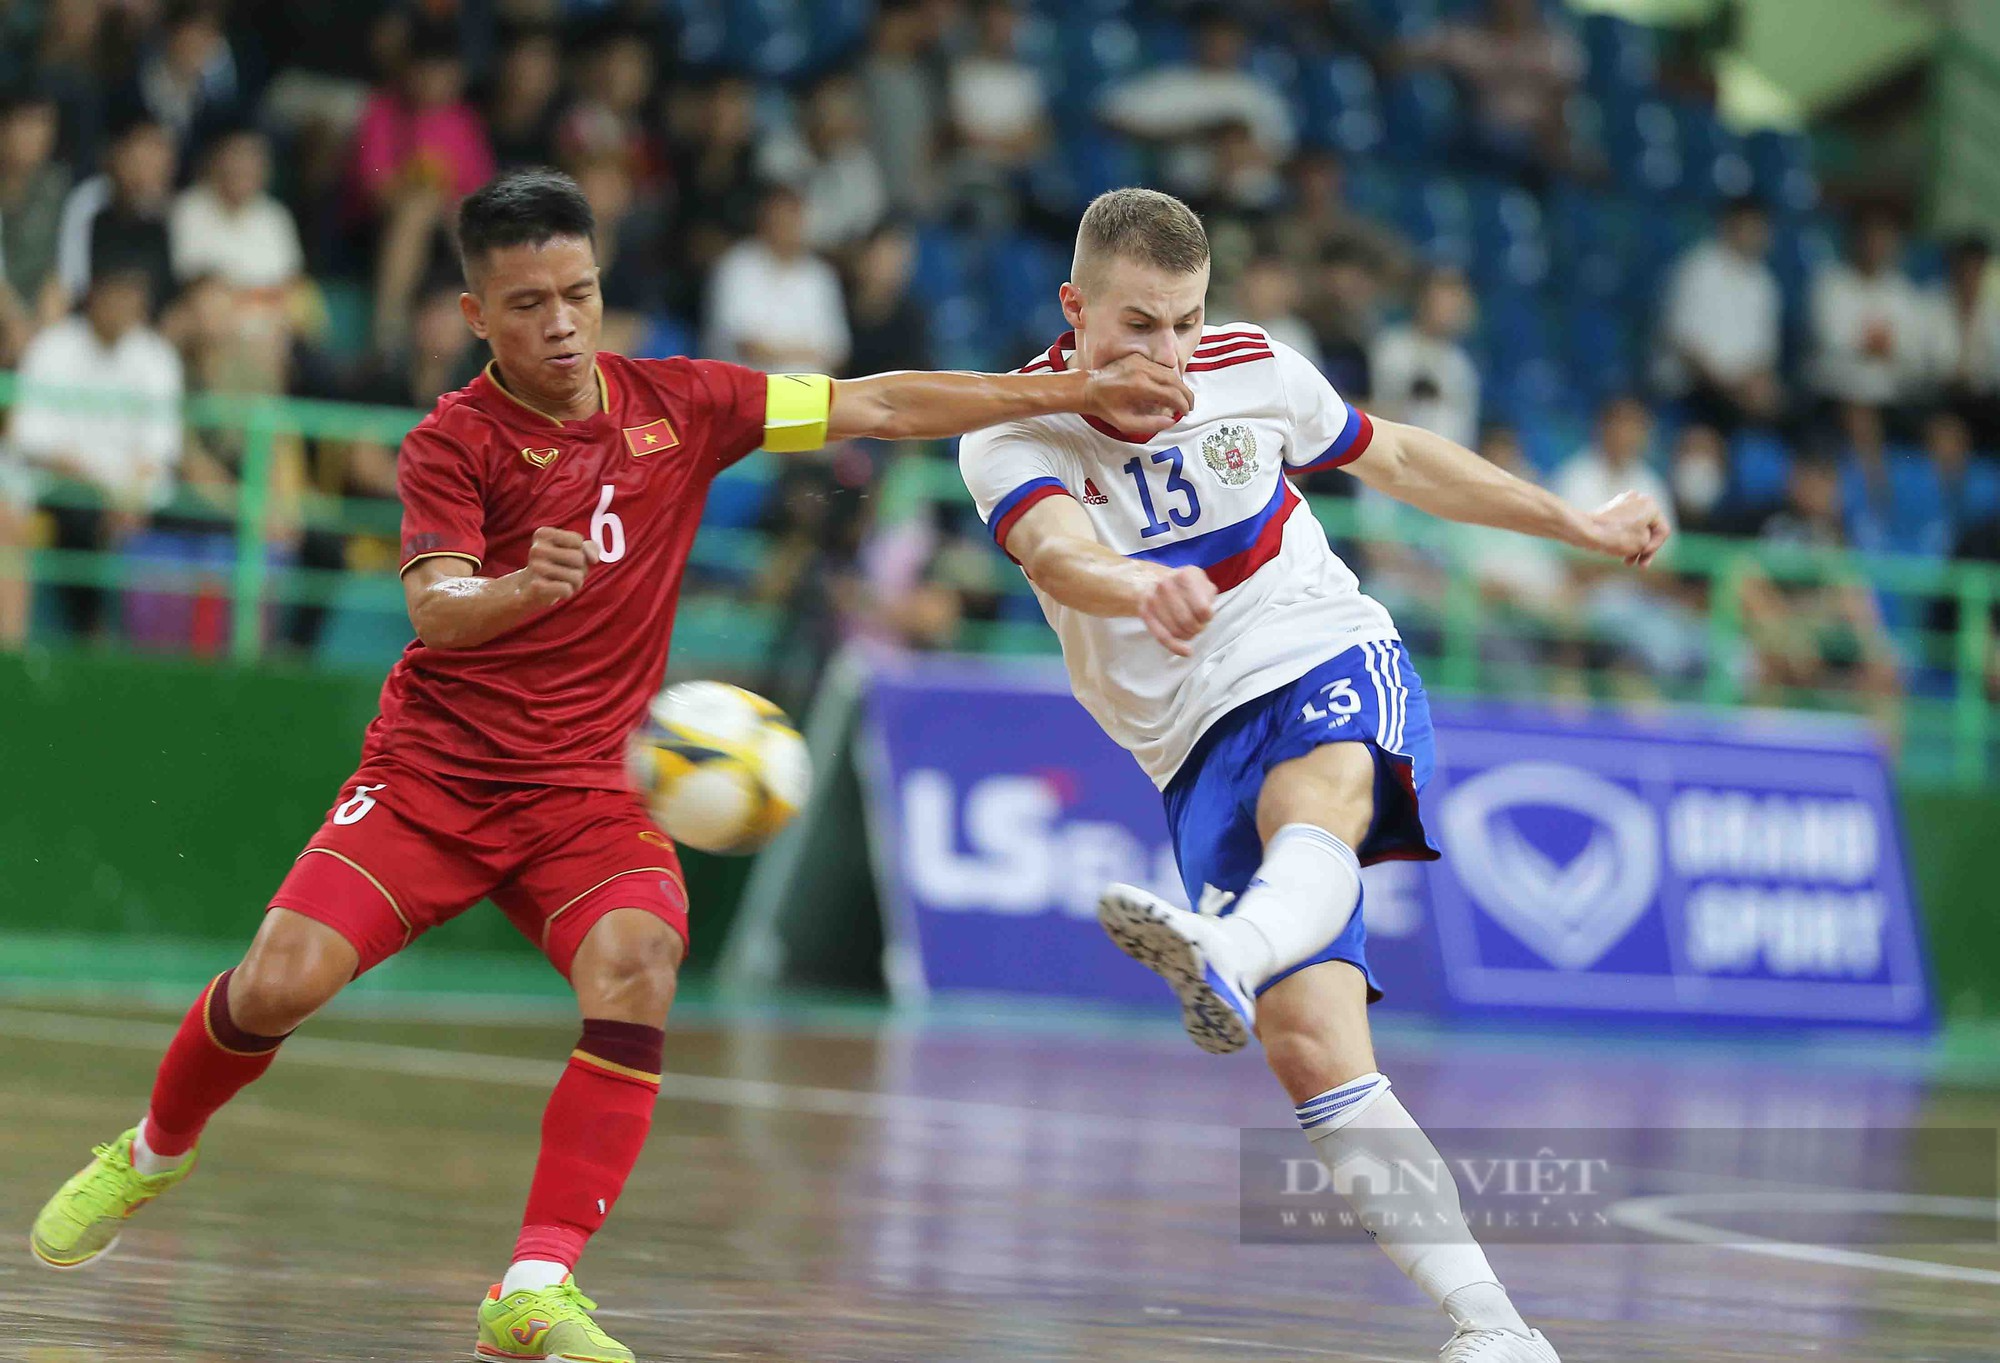 Tân đội trưởng ghi bàn phút cuối, futsal Việt Nam kịch tính cầm hoà đội hạng 4 thế giới - Ảnh 4.